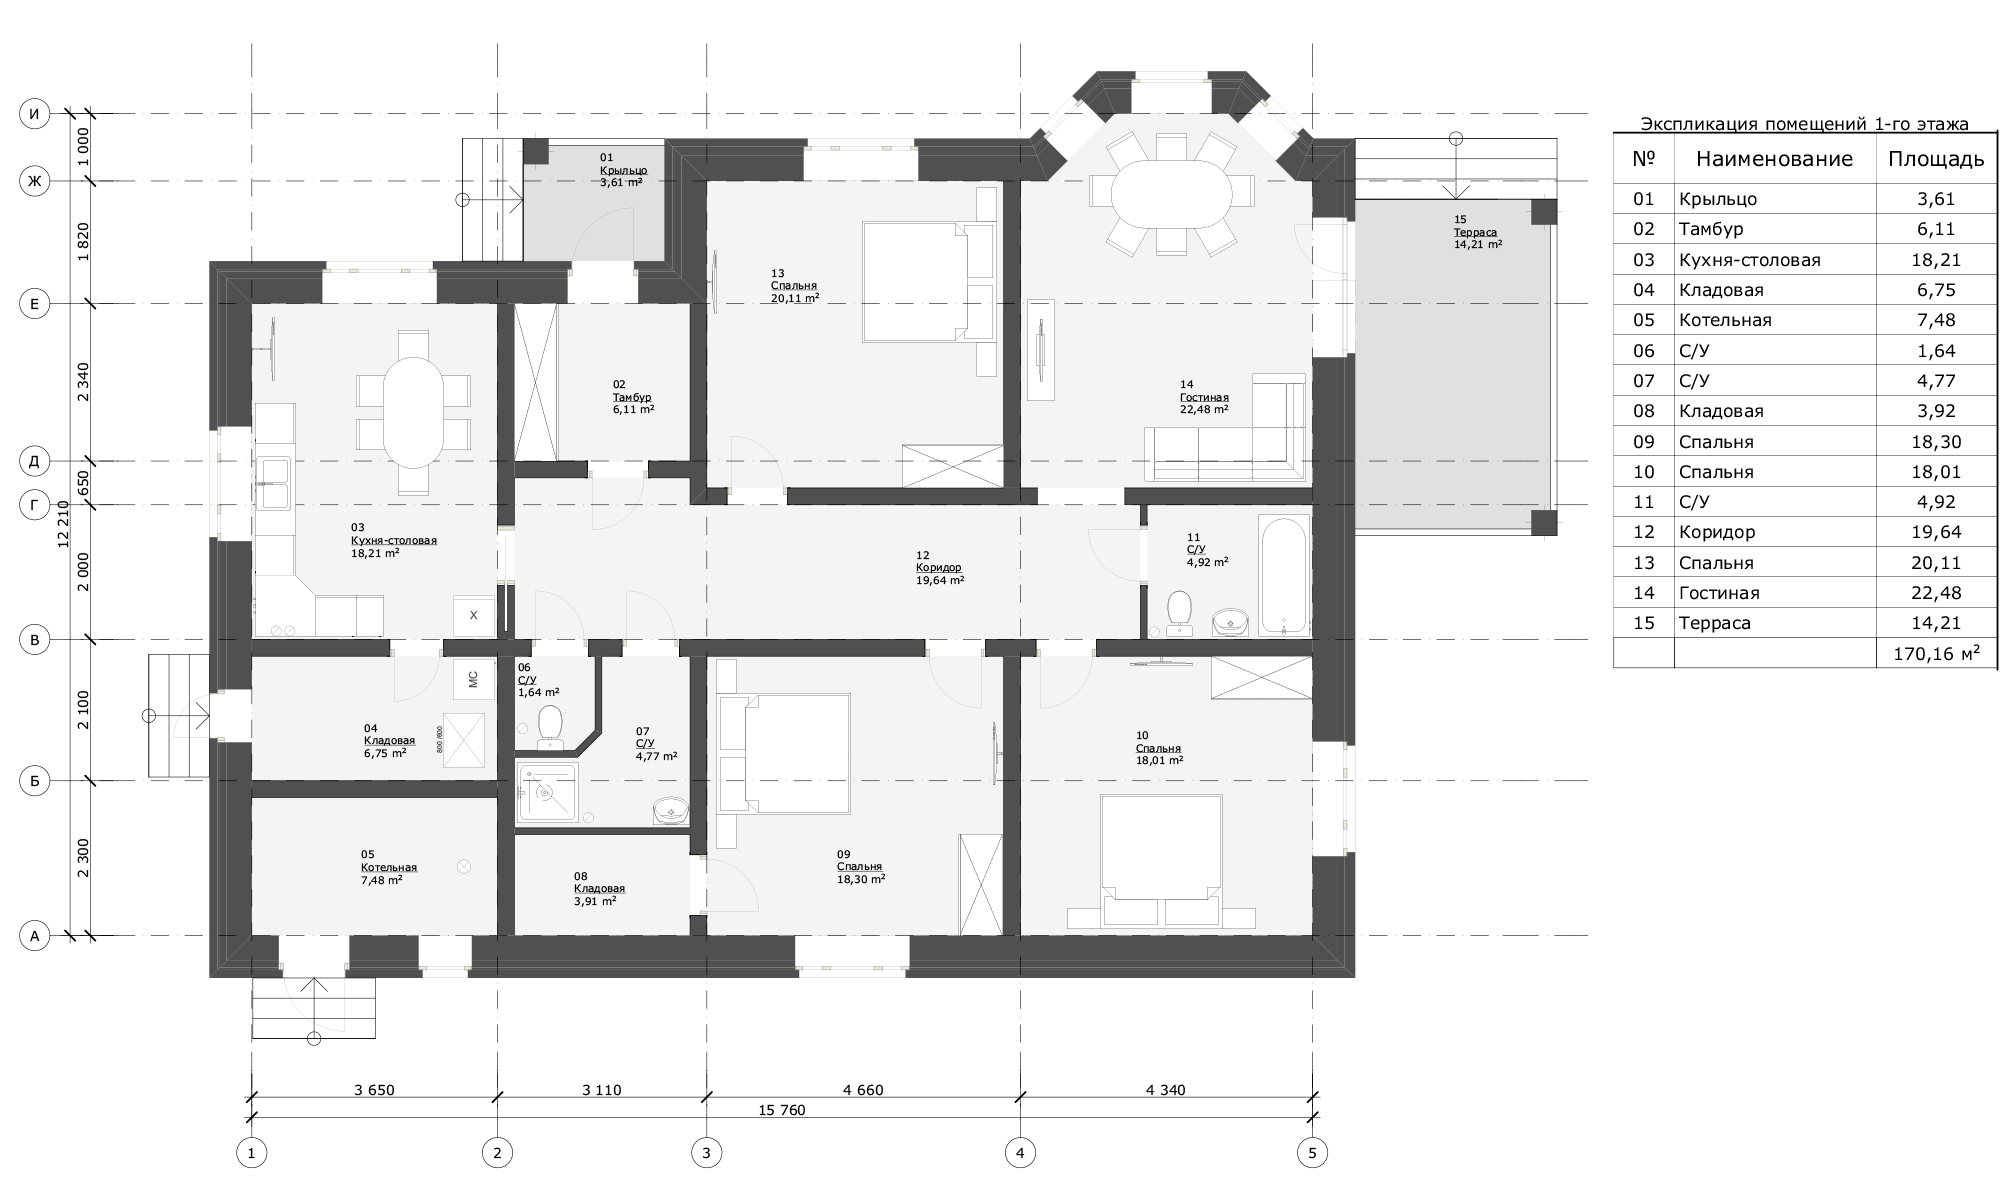 Пятикомнатный одноэтажный дом планировка